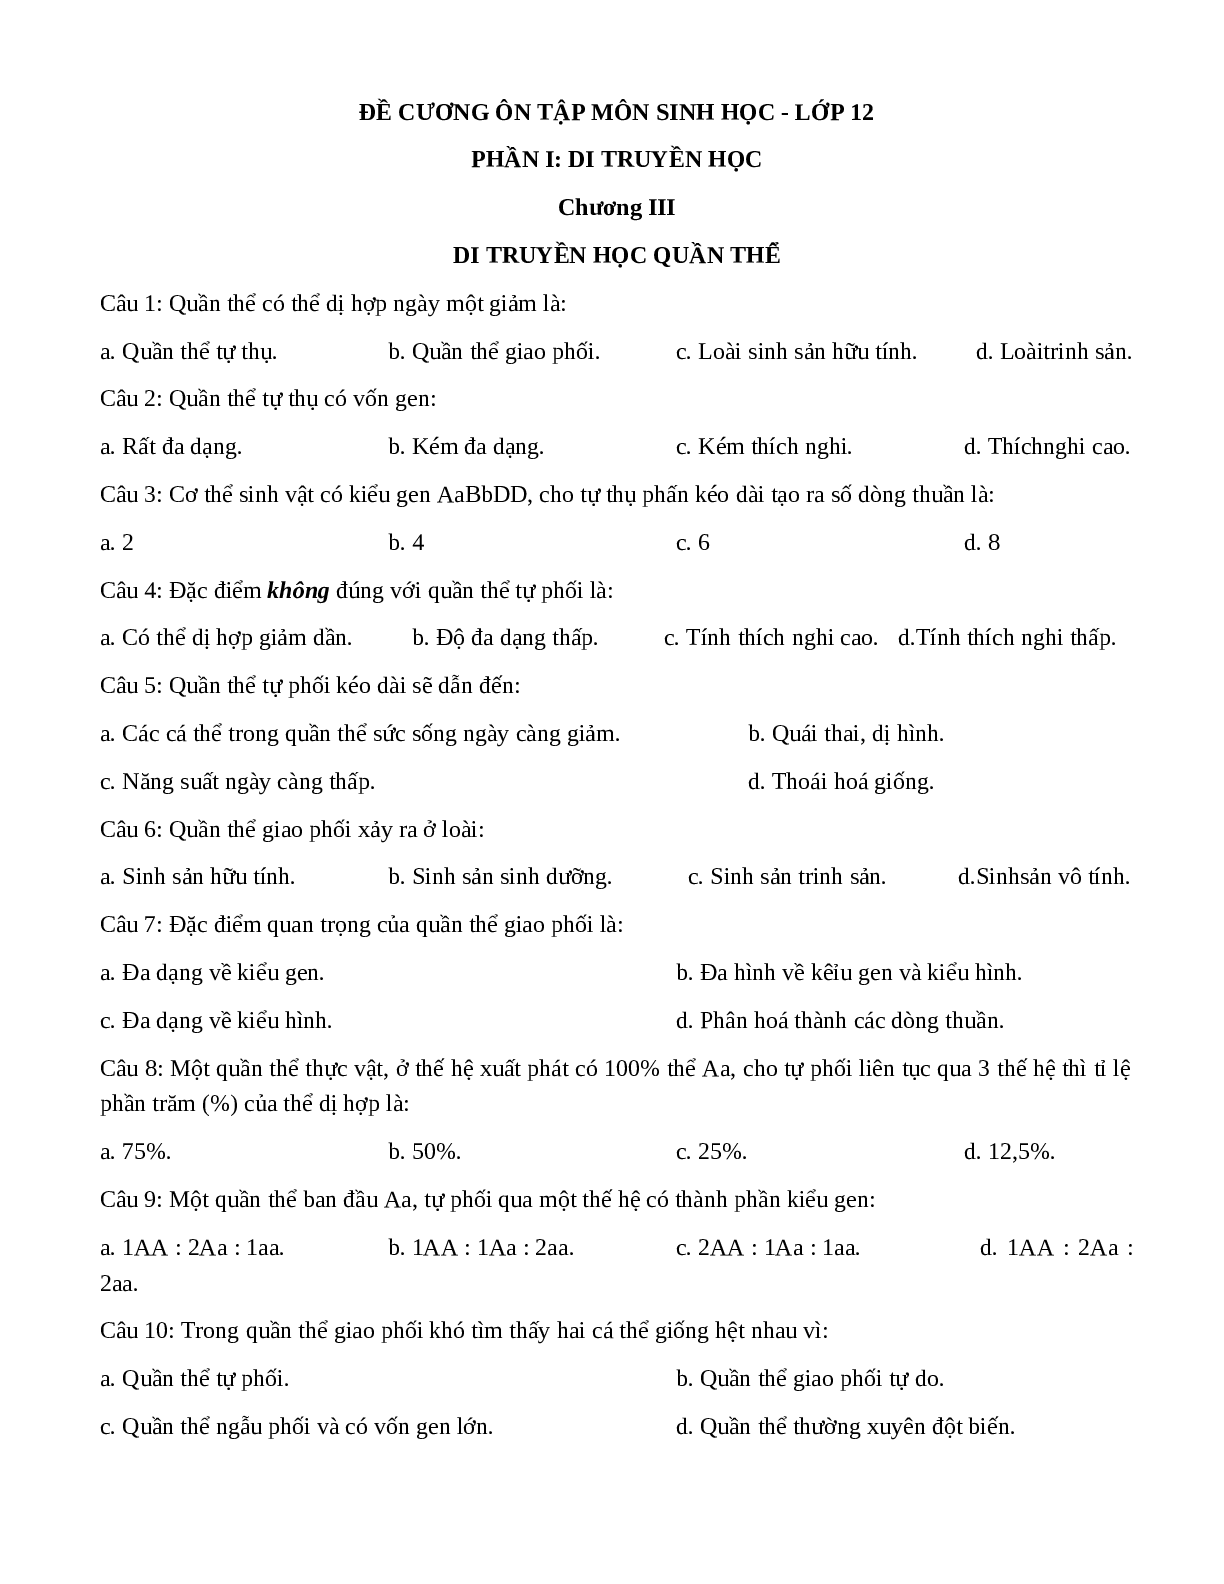 Đề cương ôn thi THPT QG phần 1 chương 3+4 - Sinh Học lớp 12 (trang 1)